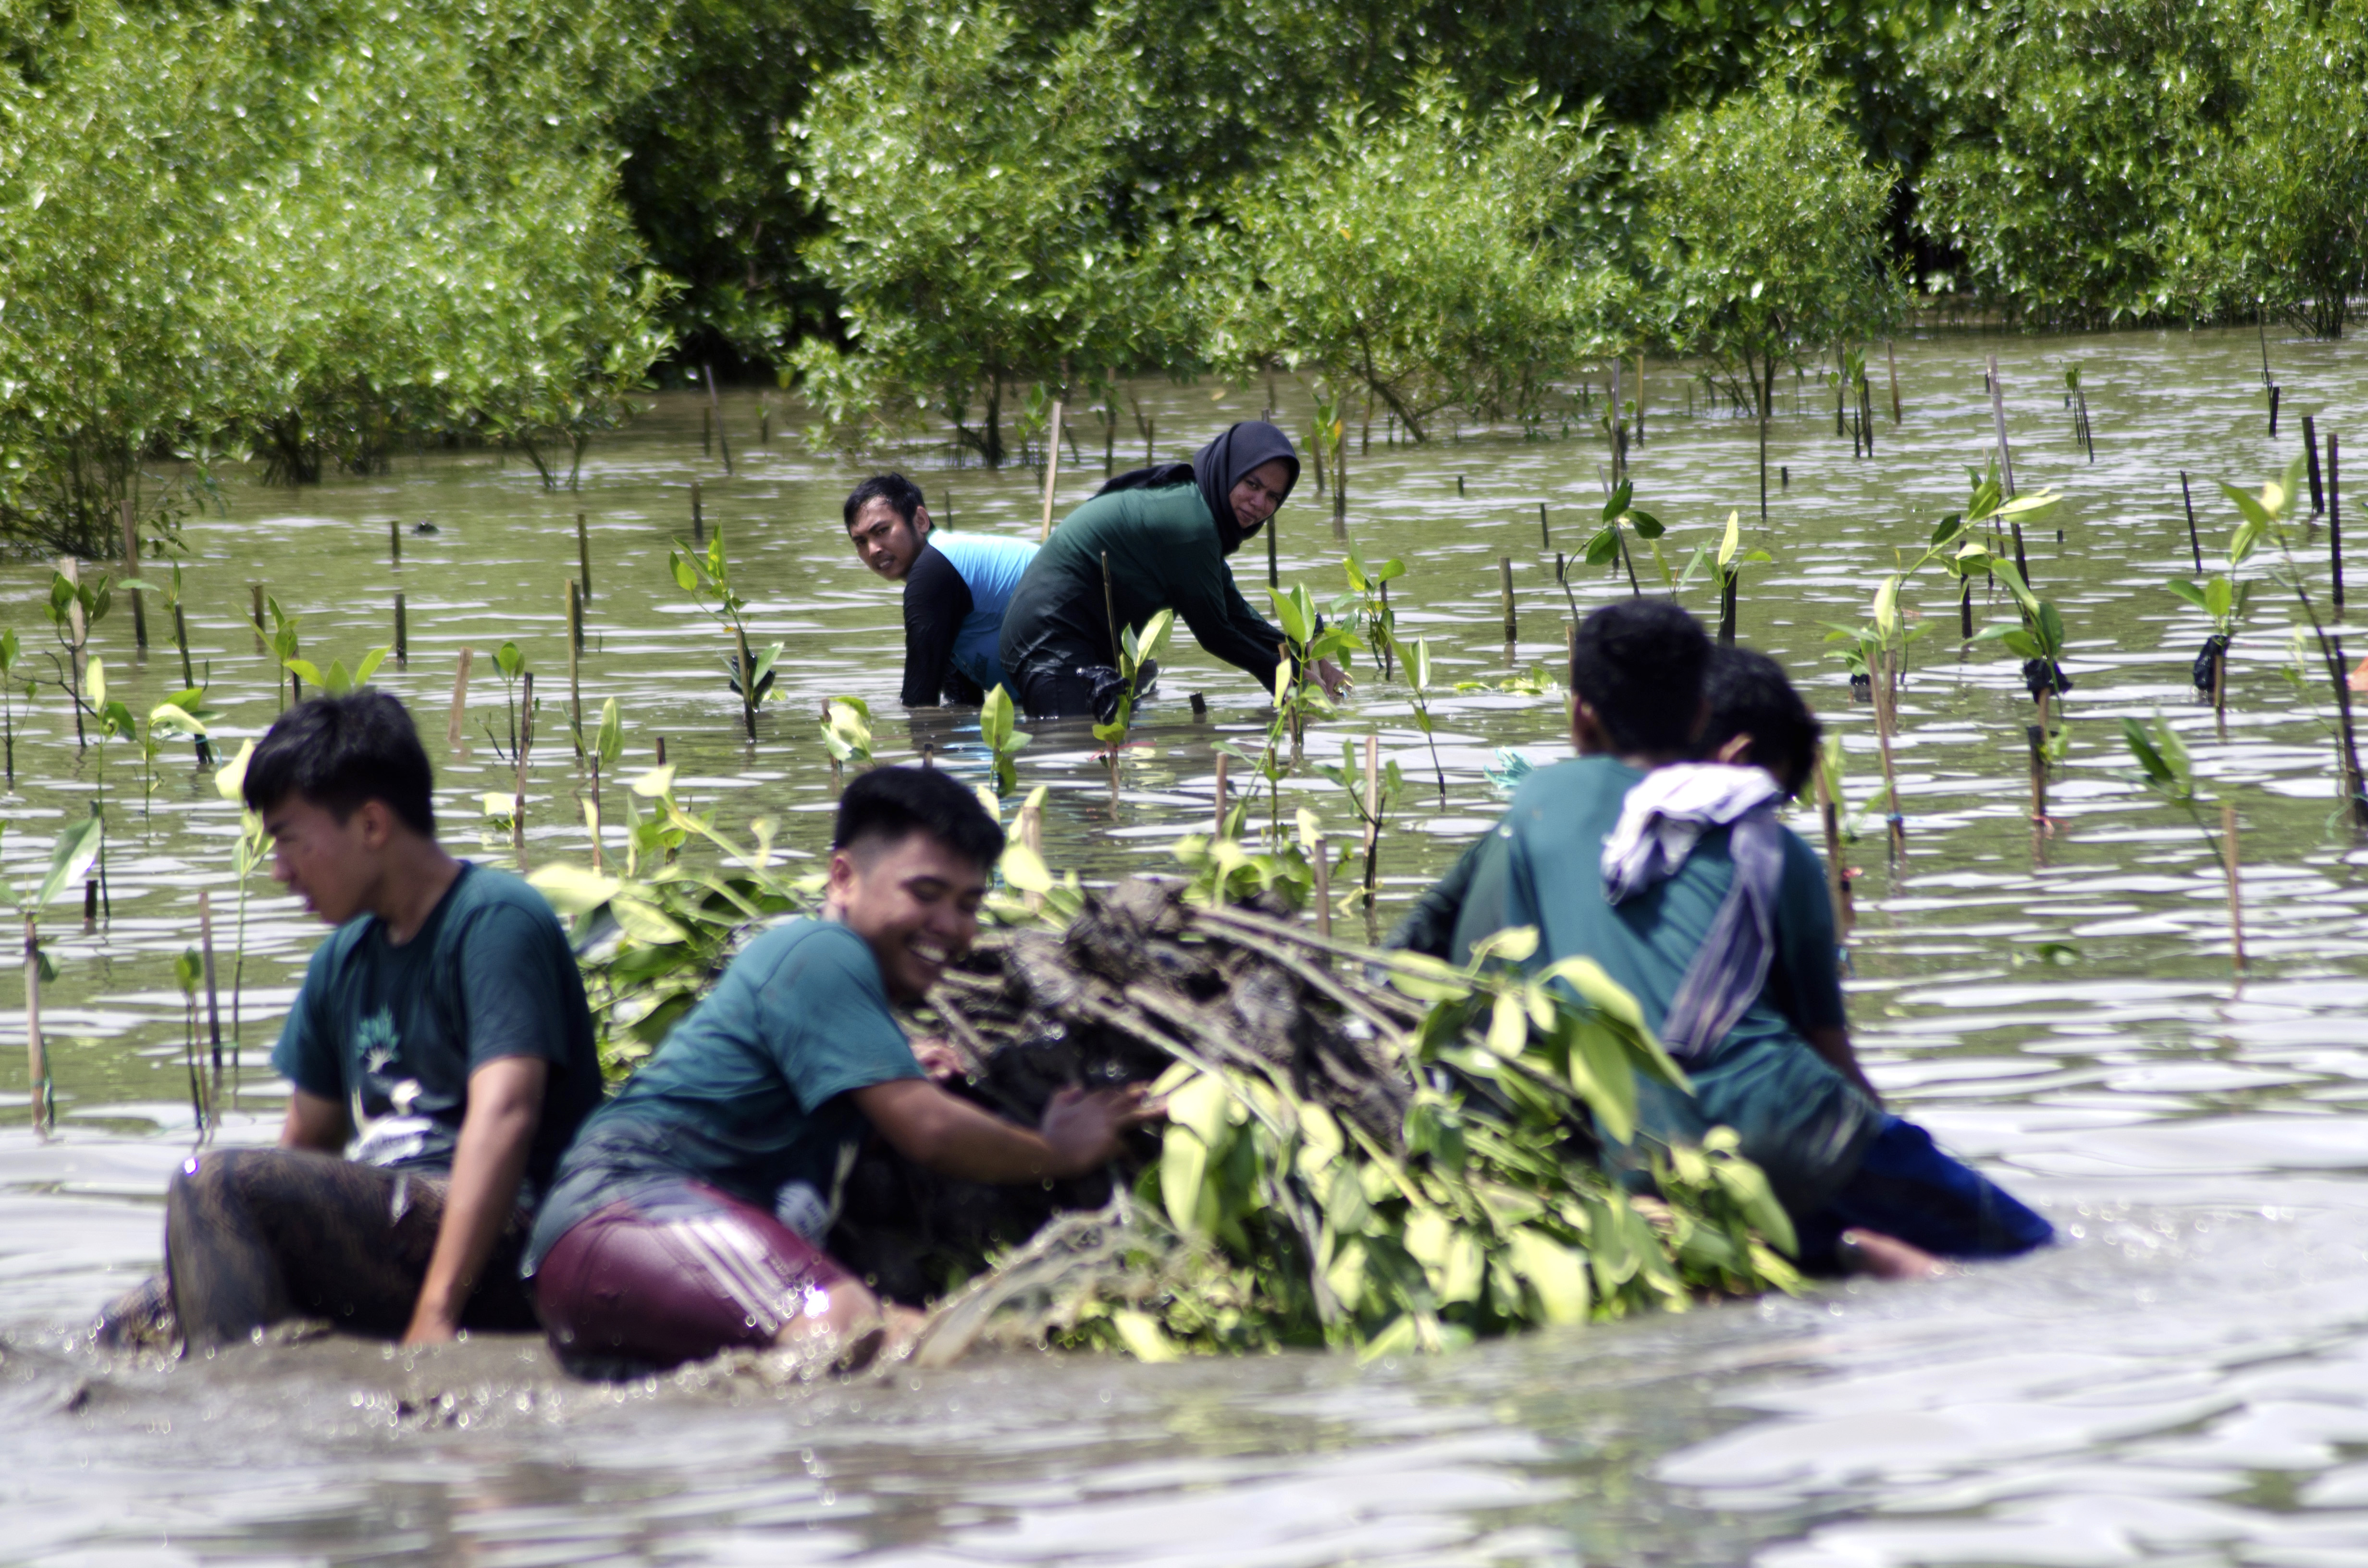 Penanaman 3.000 bibit mangrove dari jenis Rhizophora mucronate dilakukan WWF-Indonesia kerjasama dengan komunitas mahasiswa diharapkan bisa memperbaiki kondisi mangrove di Bonto Bahari di tengah ancaman konversi menjadi tambak | Foto: Wahyu Chandra/Mongabay Indonesia